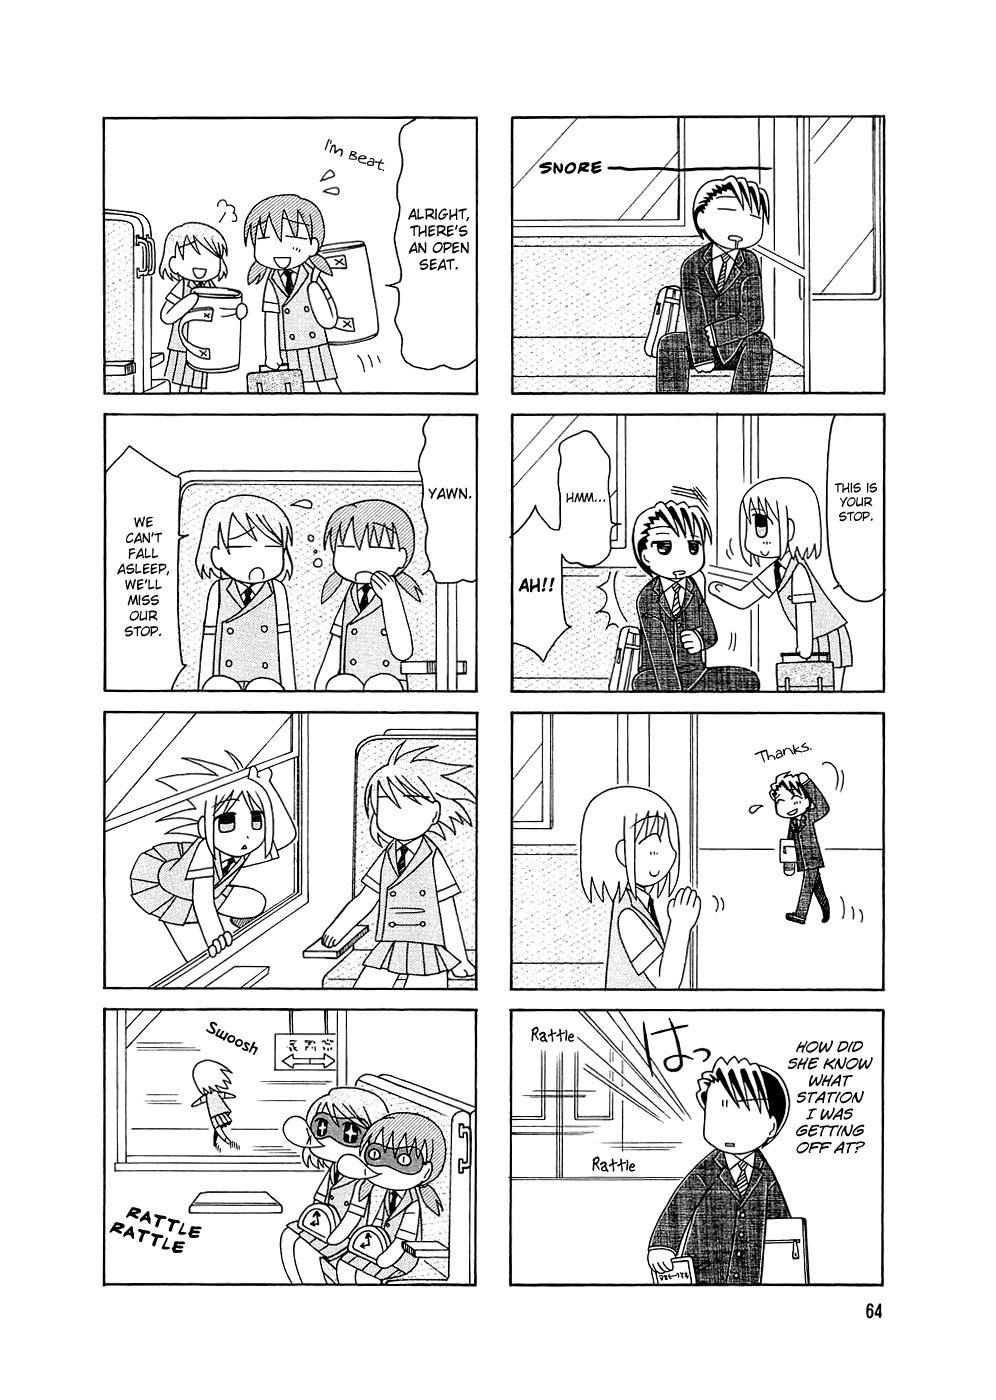 Tonari no Nanige-san Vol.1 Ch.4